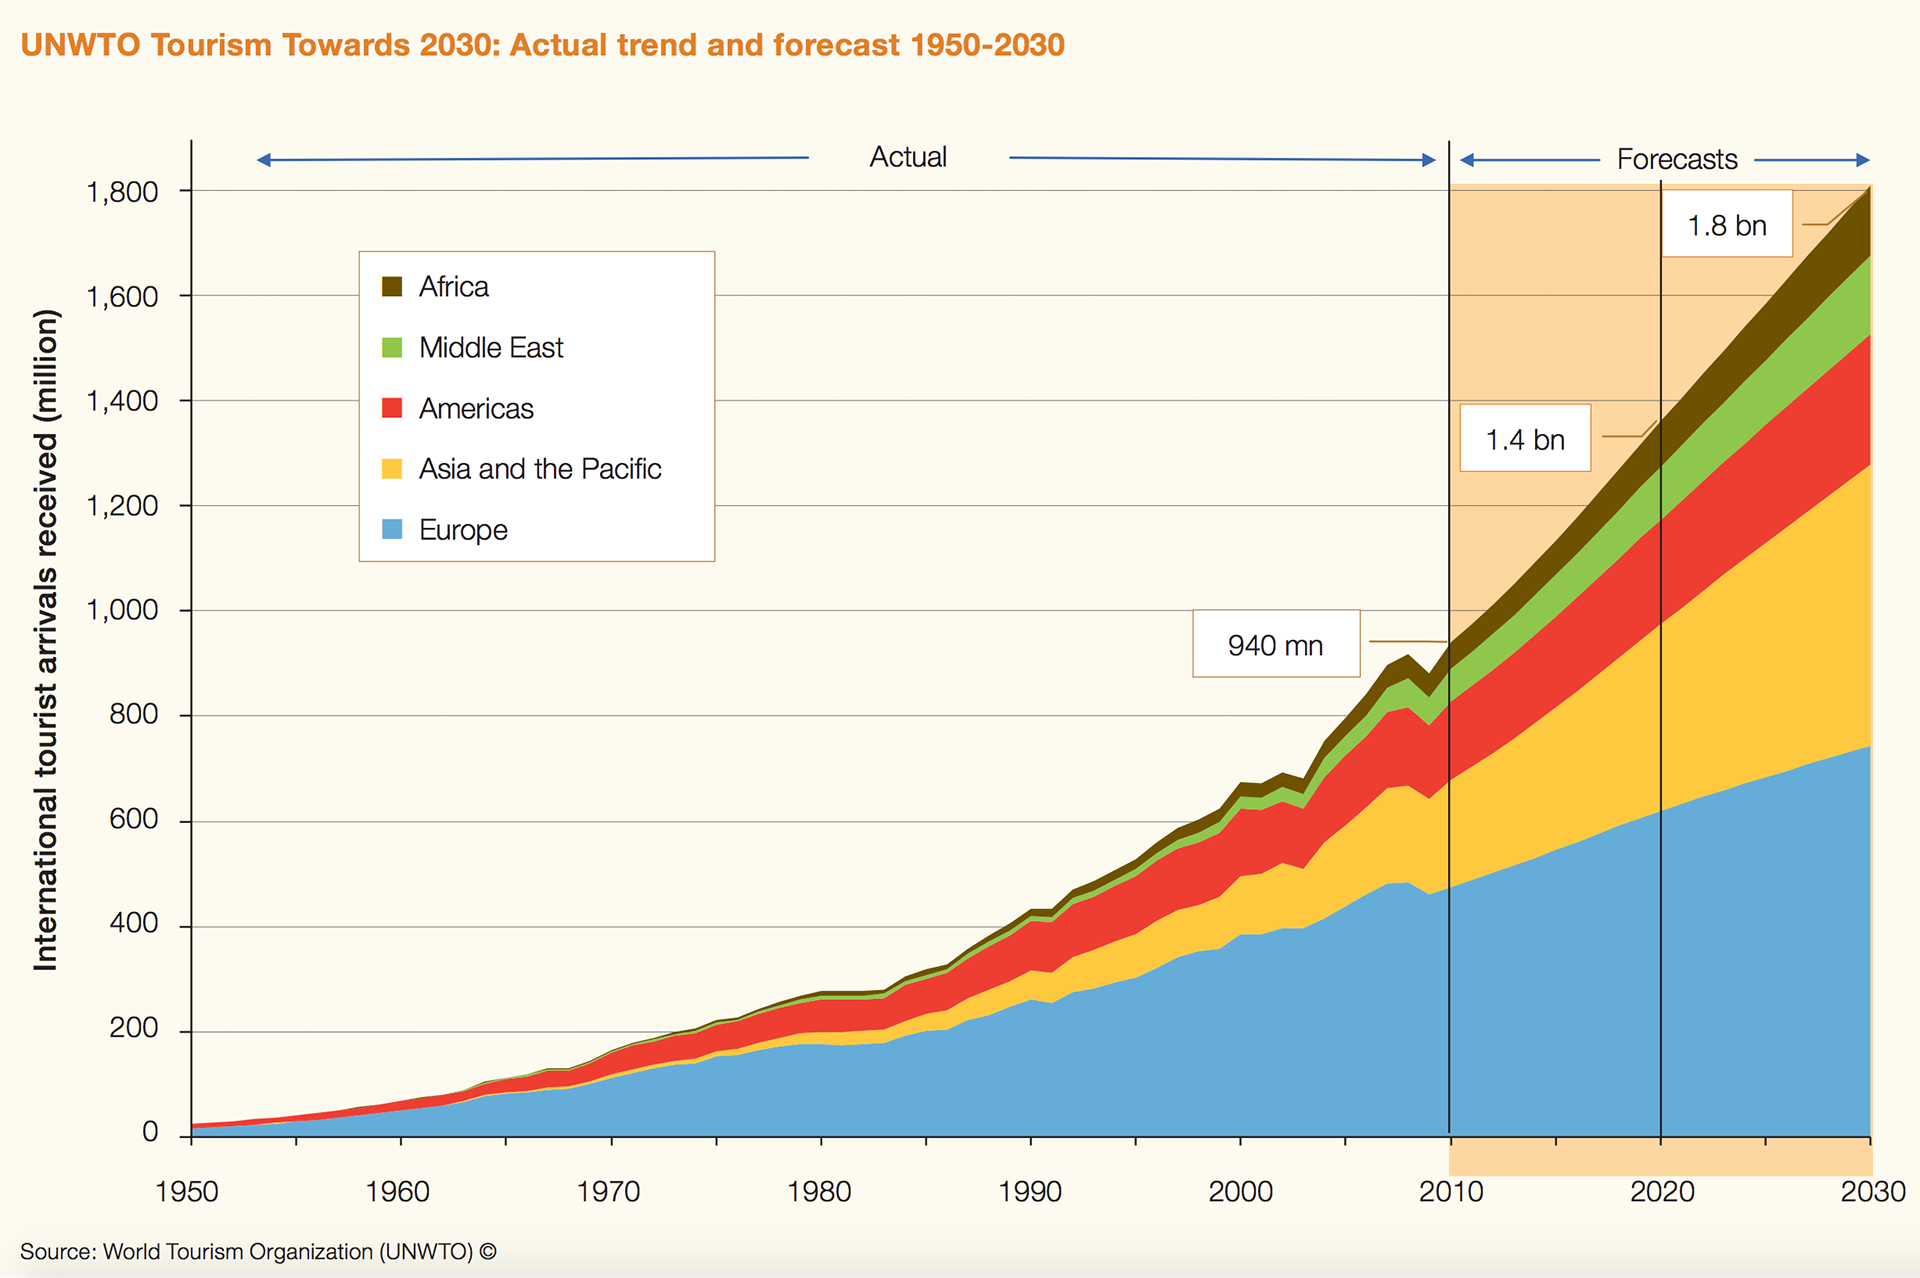 UNWTO:s prognos för turismen till 2030